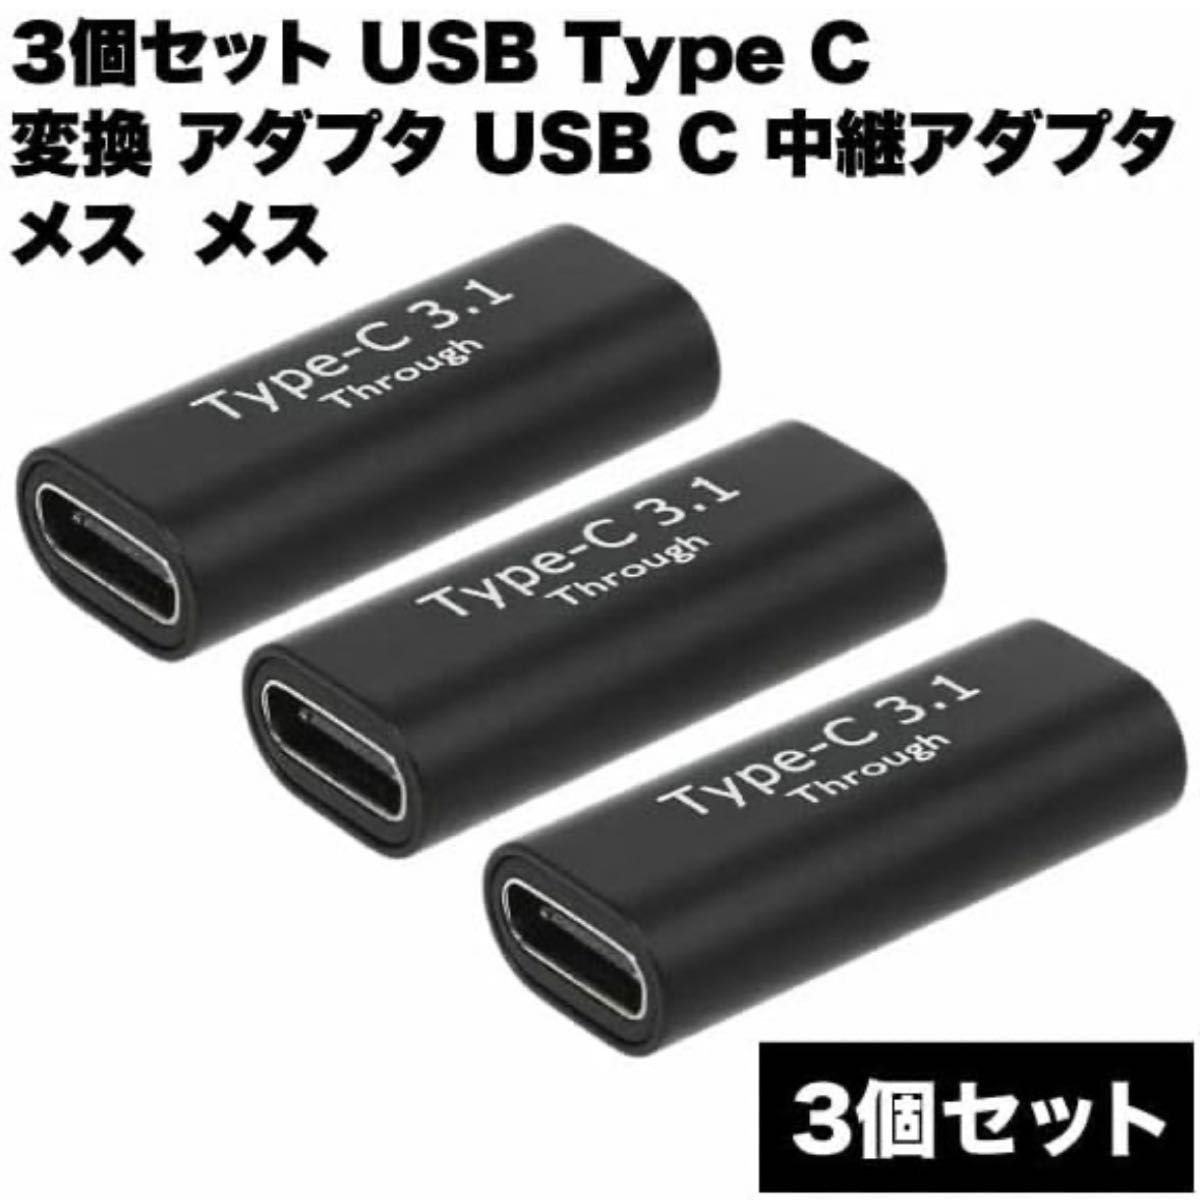 【3個セット】 USB Type C 変換 アダプタ USB-C 中継アダプタ